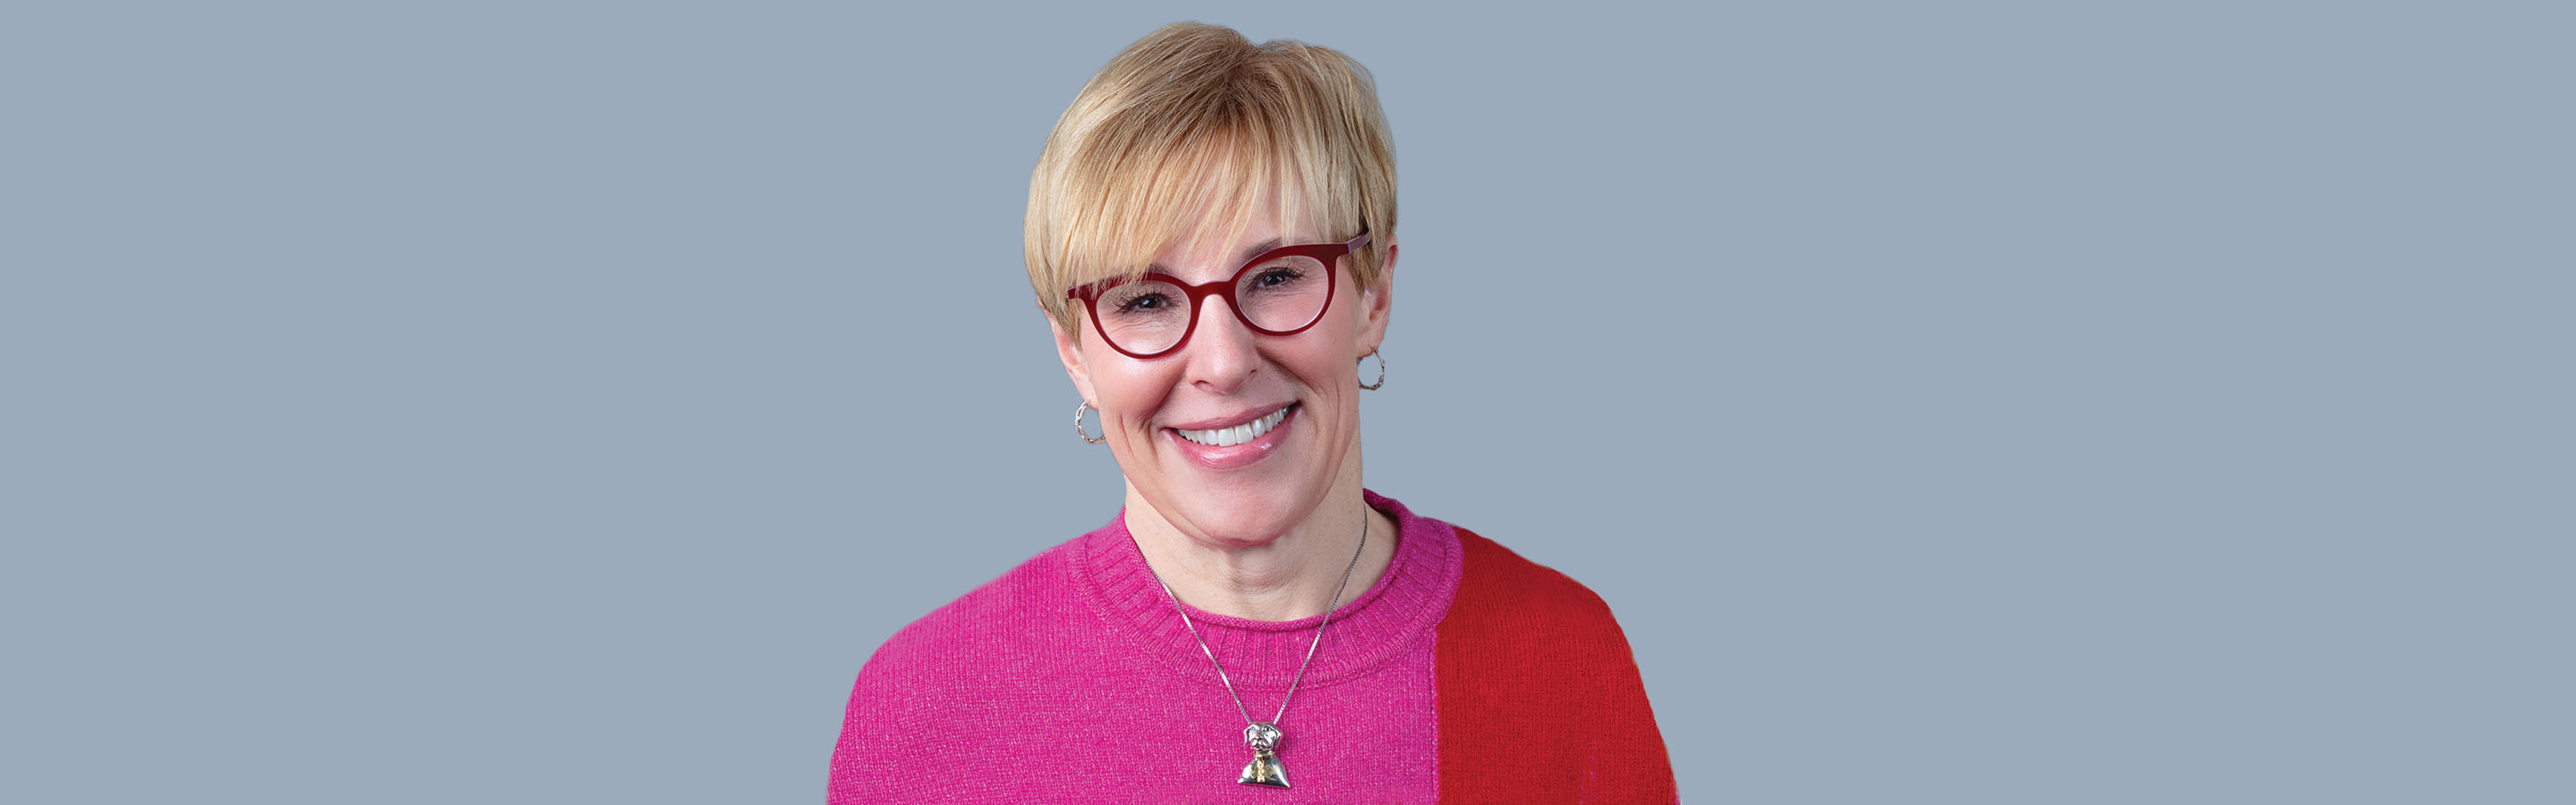 President's column - Dr. Lori Teller